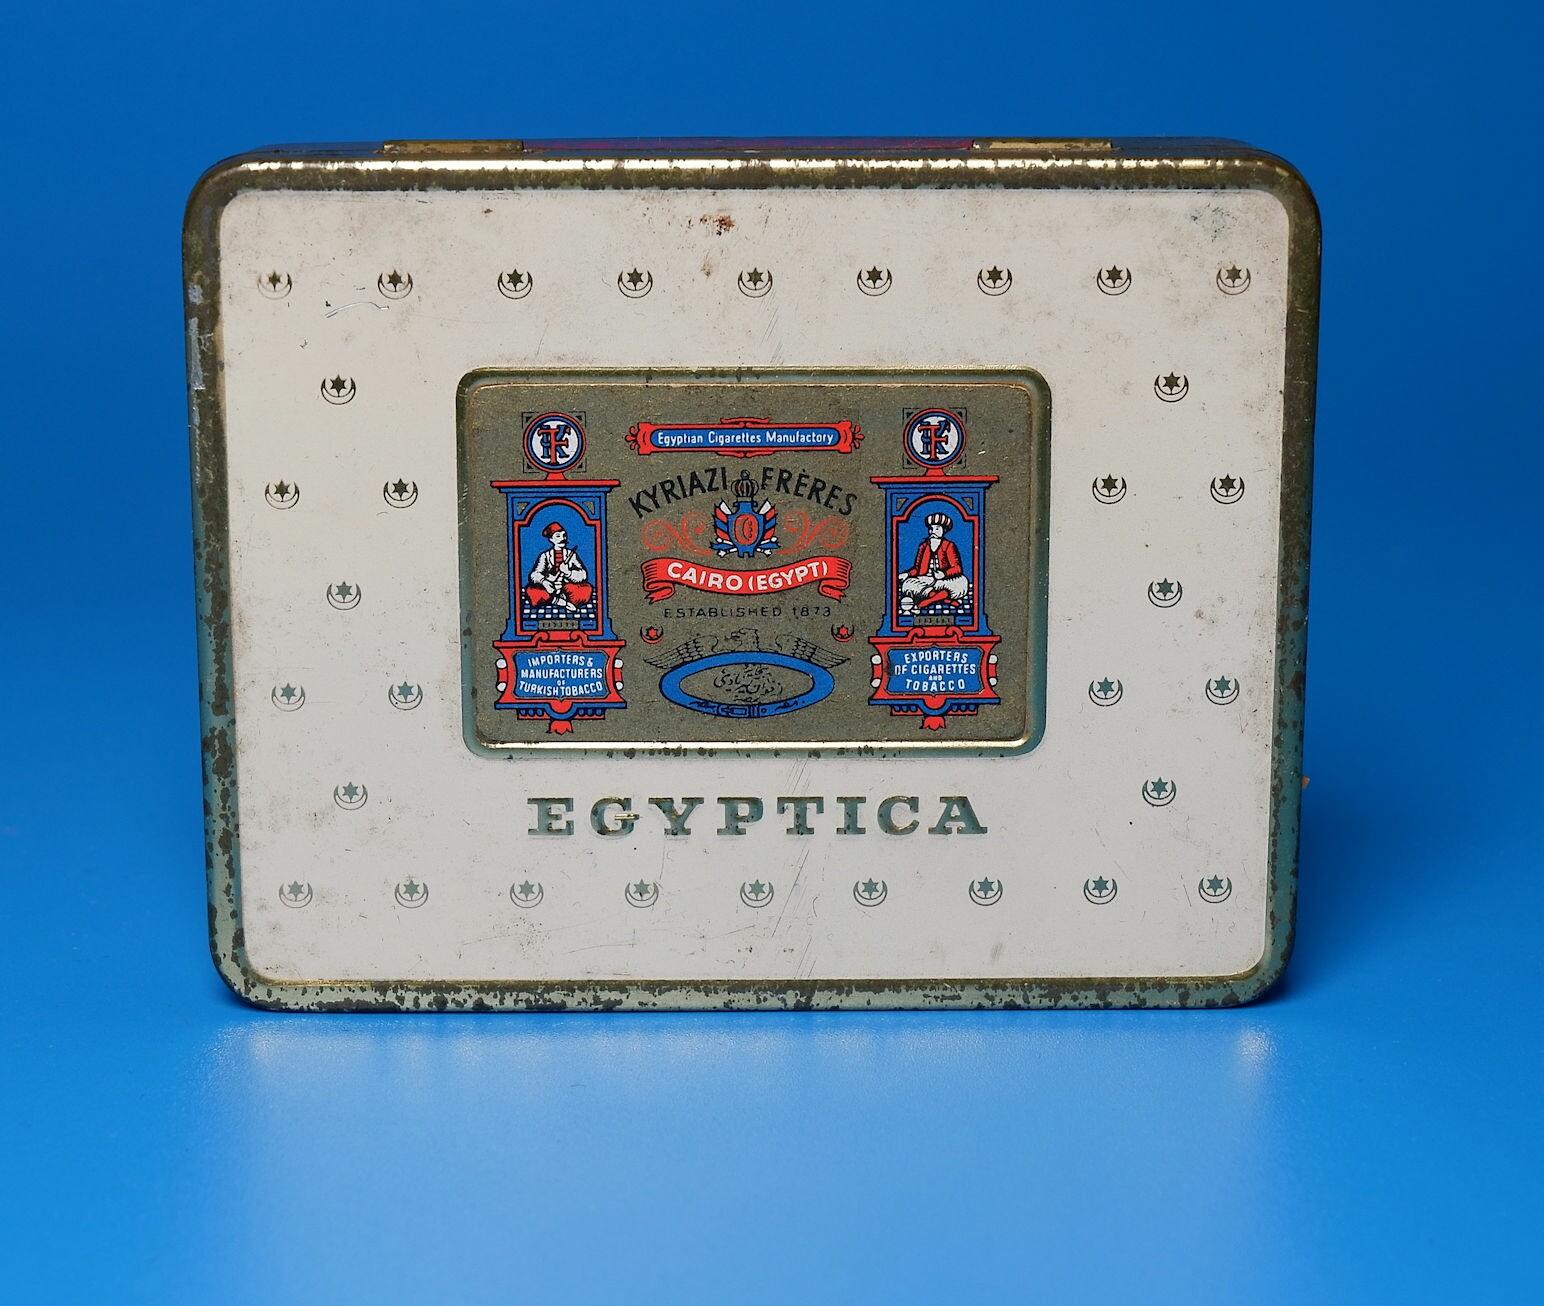 Zigarettenmarke	"Egyptica" 20 Stück Blechpackung (Volkskunde- und Freilichtmuseum Roscheider Hof CC0)